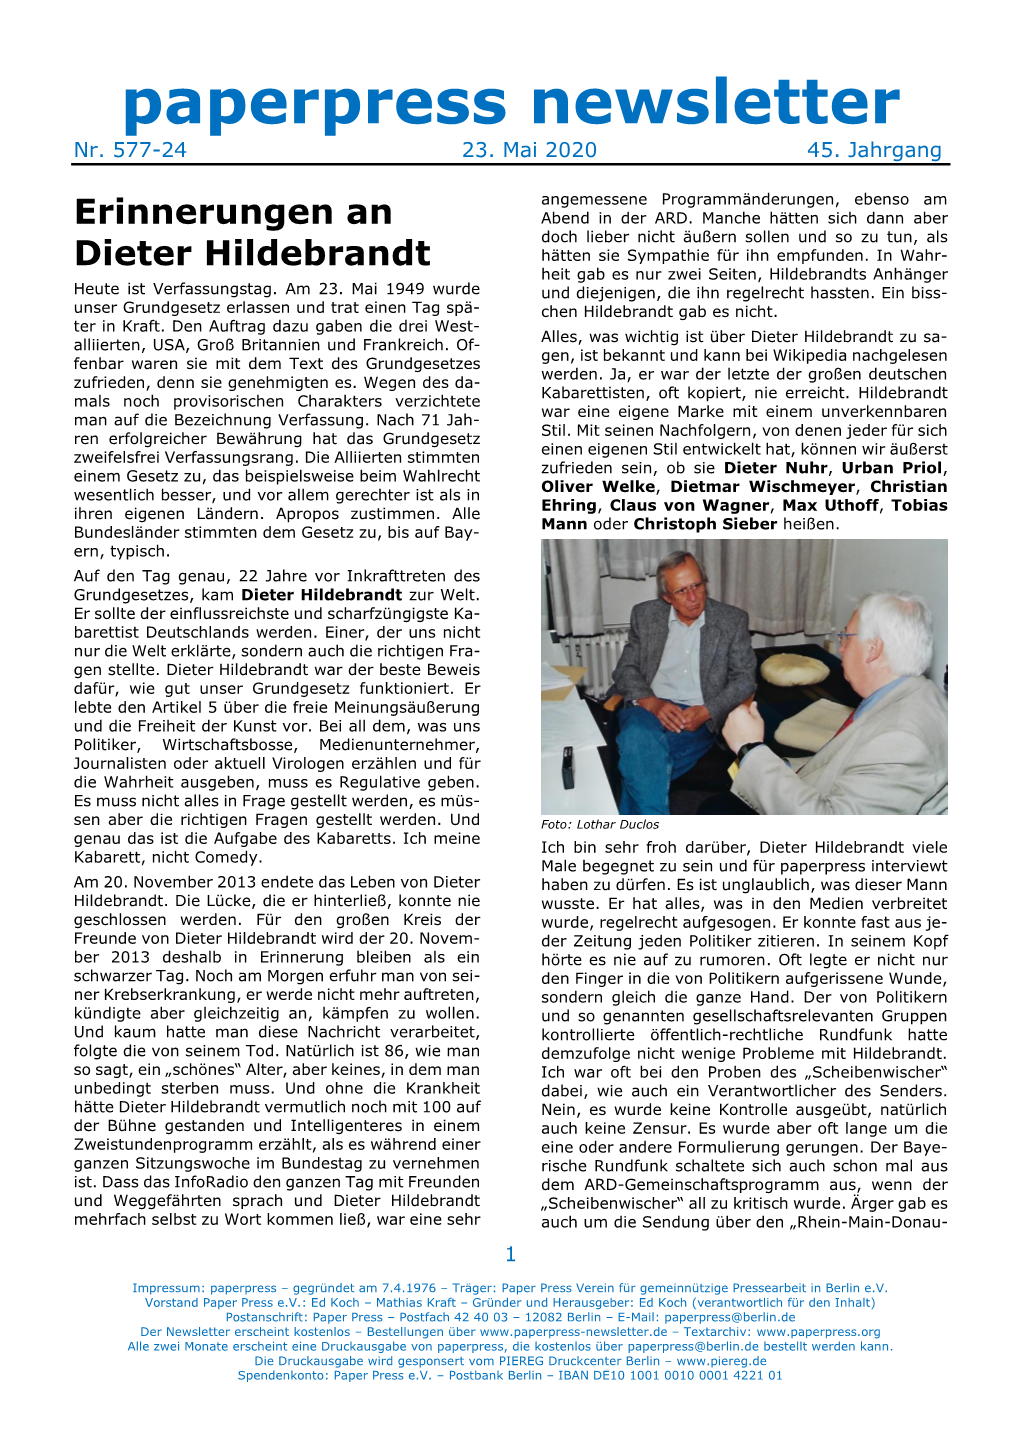 Erinnerungen an Dieter Hildebrandt